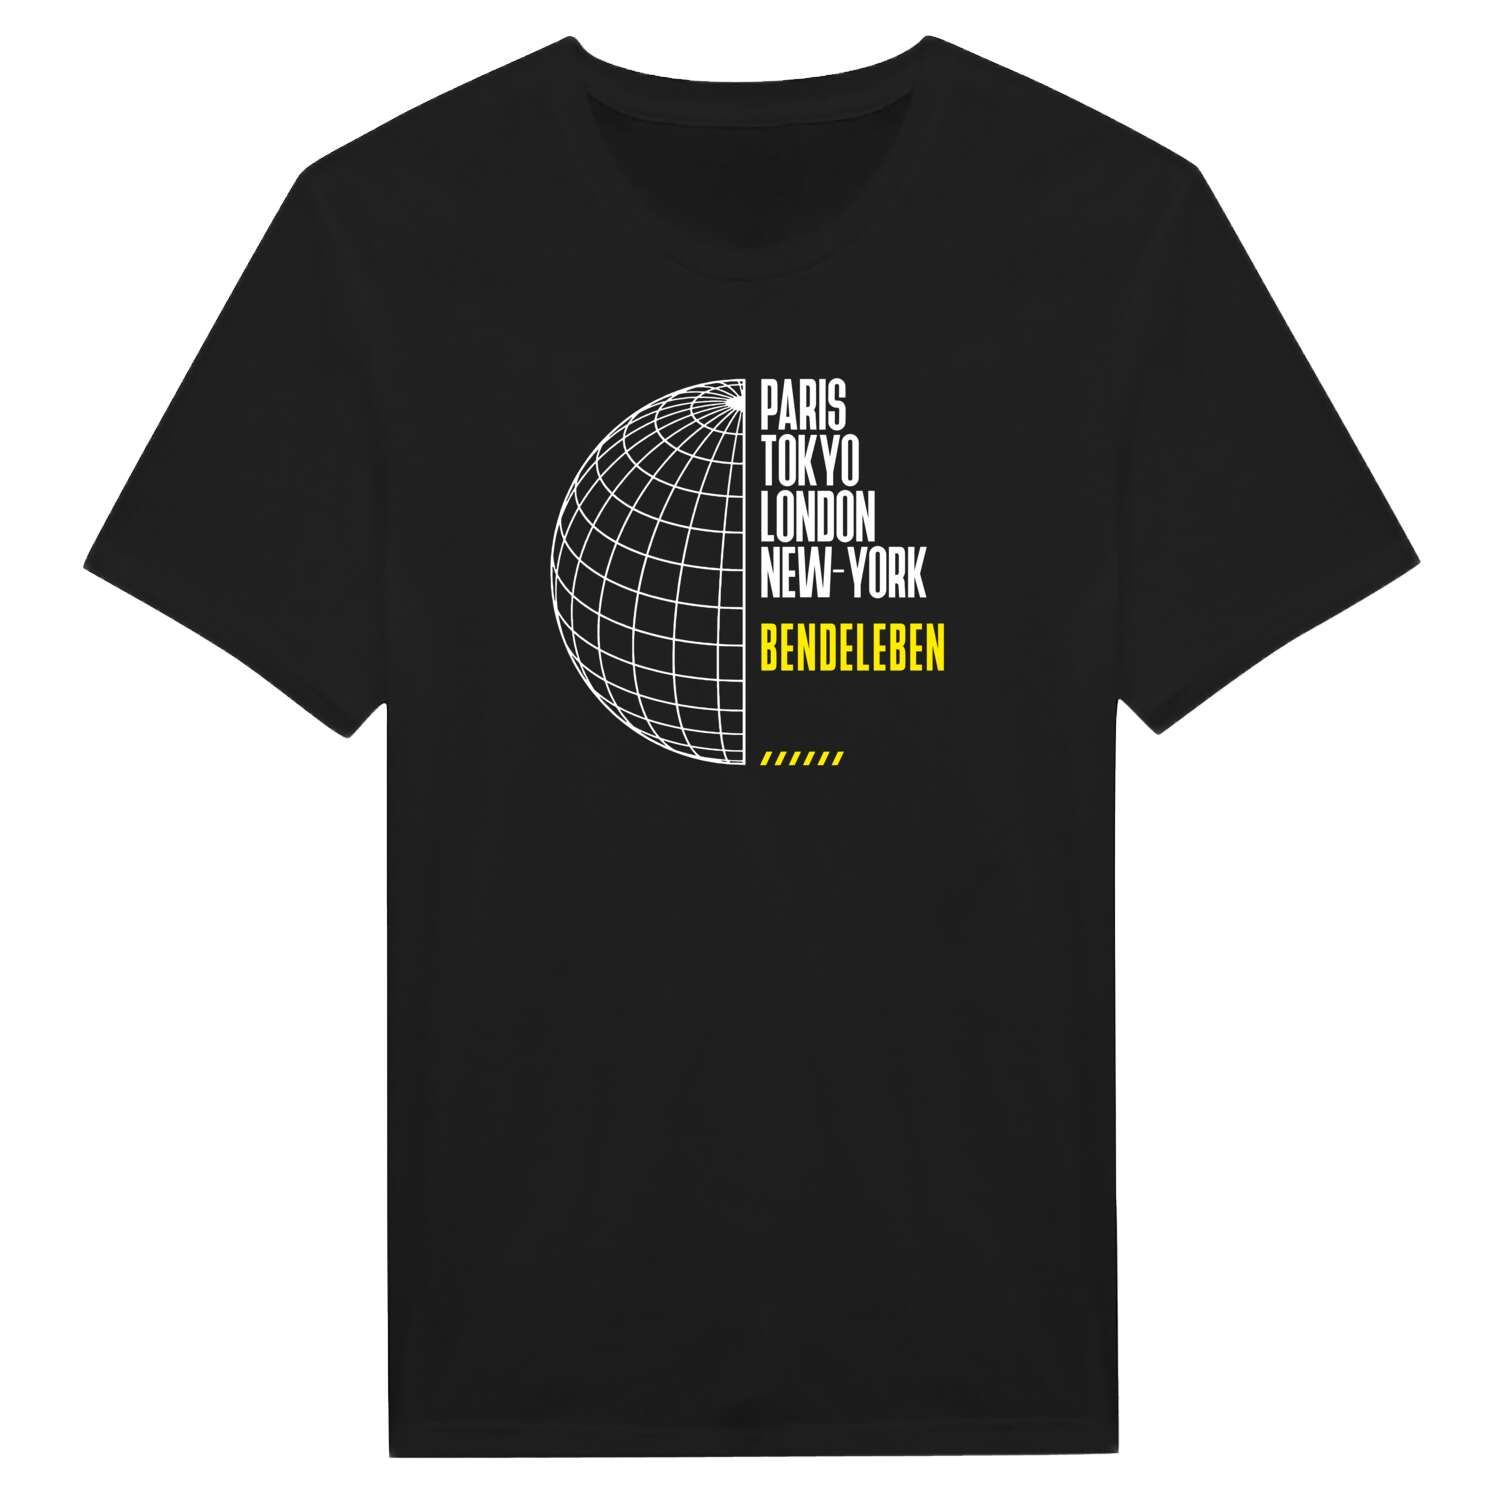 Bendeleben T-Shirt »Paris Tokyo London«